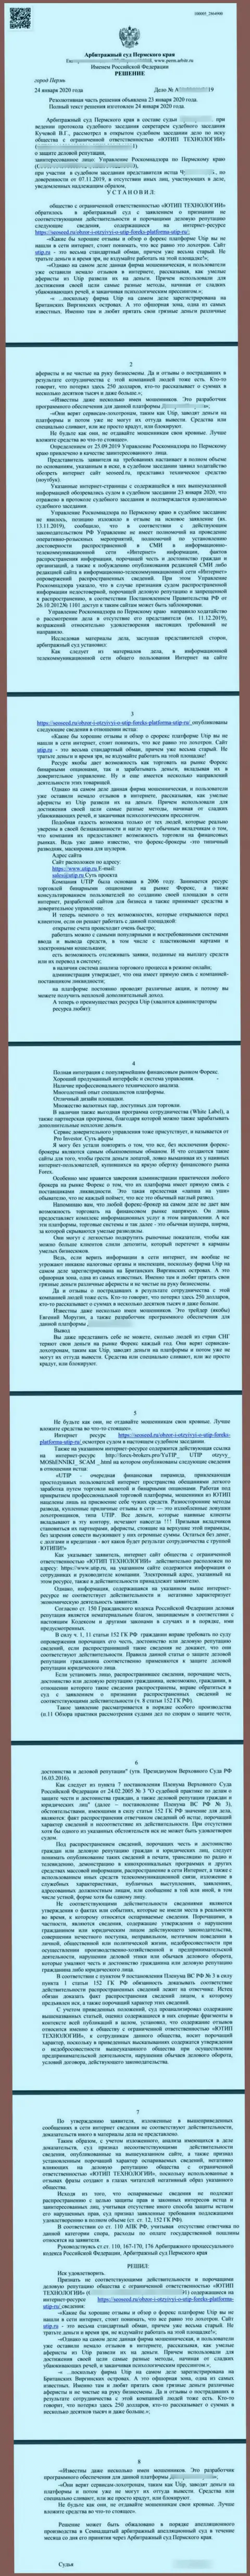 Судебный иск лохотронщиков UTIP Ru, который был удовлетворен самым гуманным судом в мире